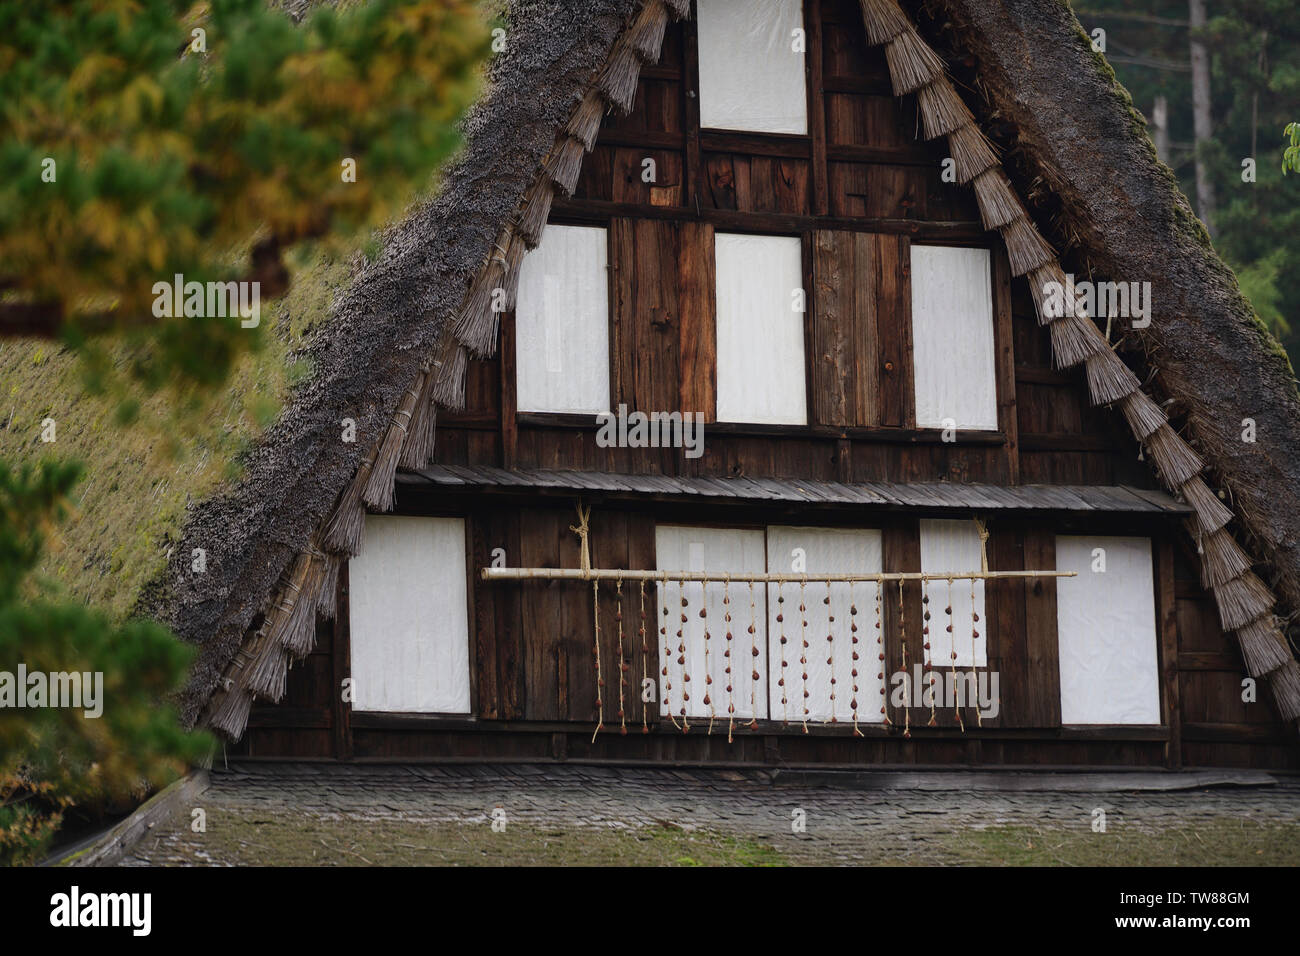 Tradizionale Giapponese del Gassho-casa colonica in stile dettagli architettonici closeup, Hida Folk Village, Takayama, Prefettura di Gifu, Giappone. Foto Stock